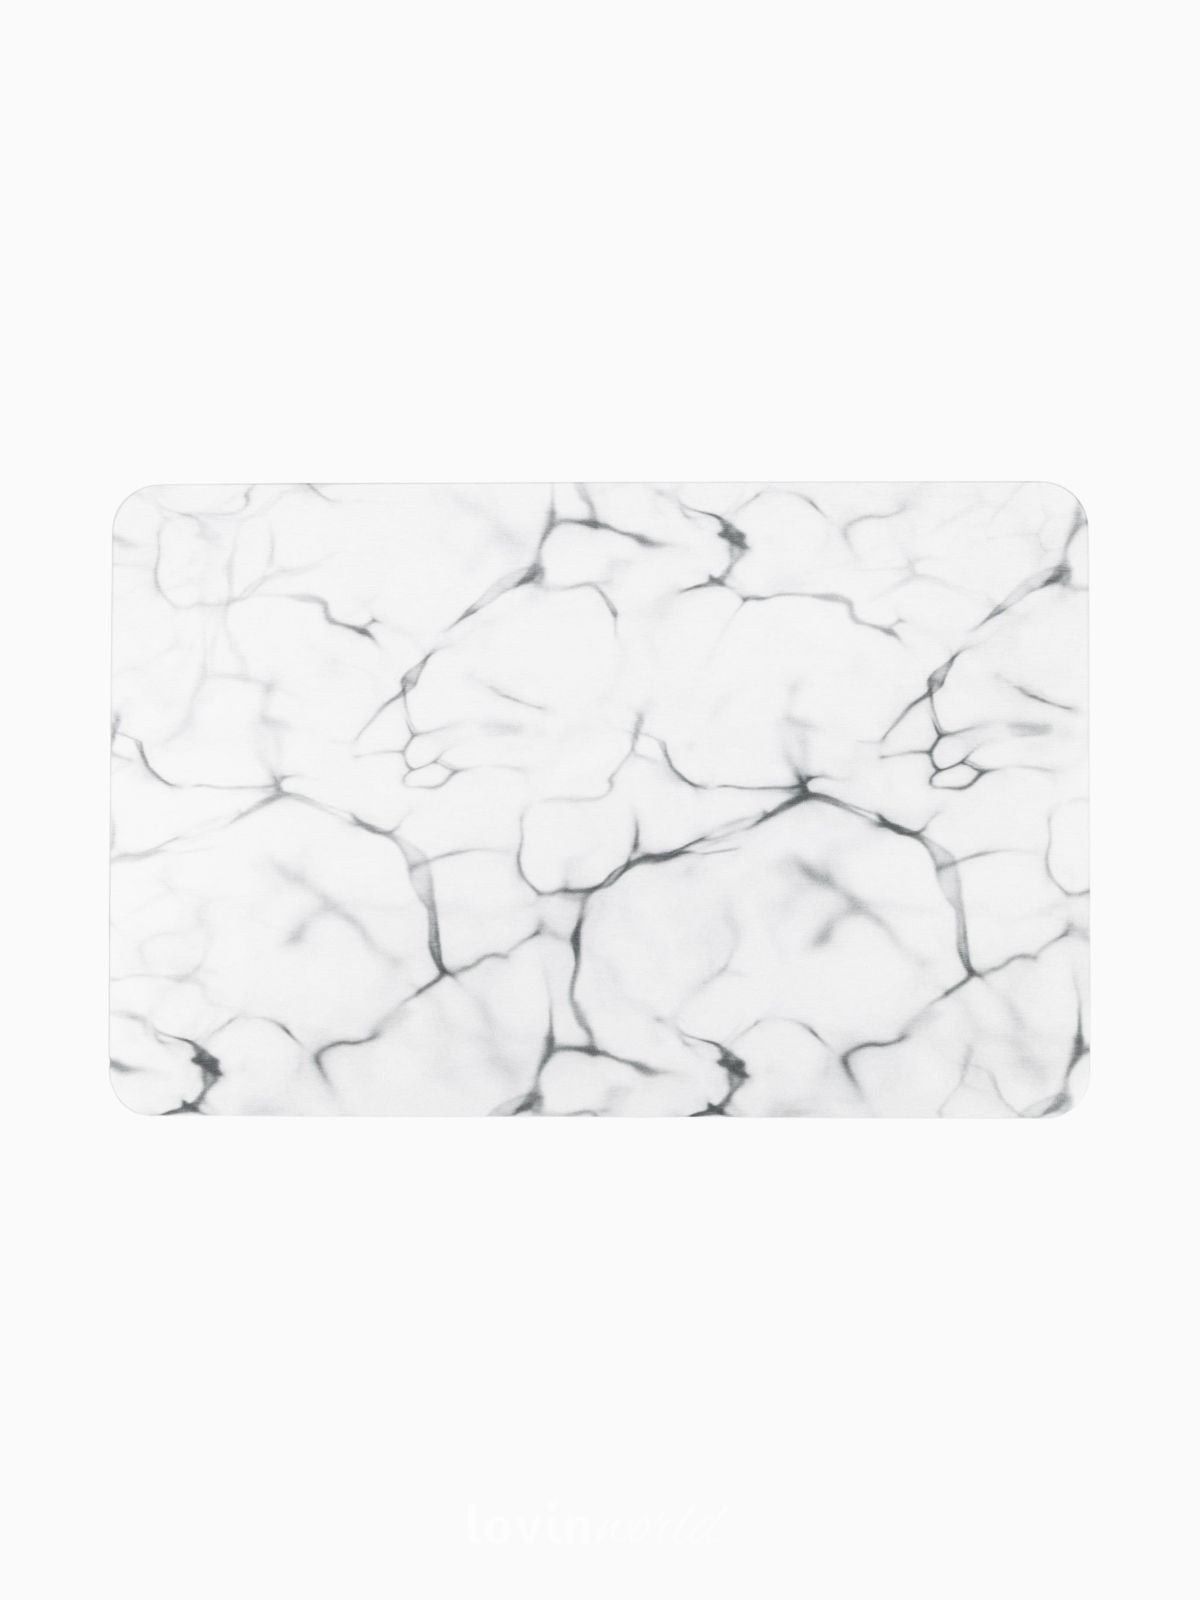 Tappeto da bagno Marble antiscivolo effetto marmo 60x39 cm.-1